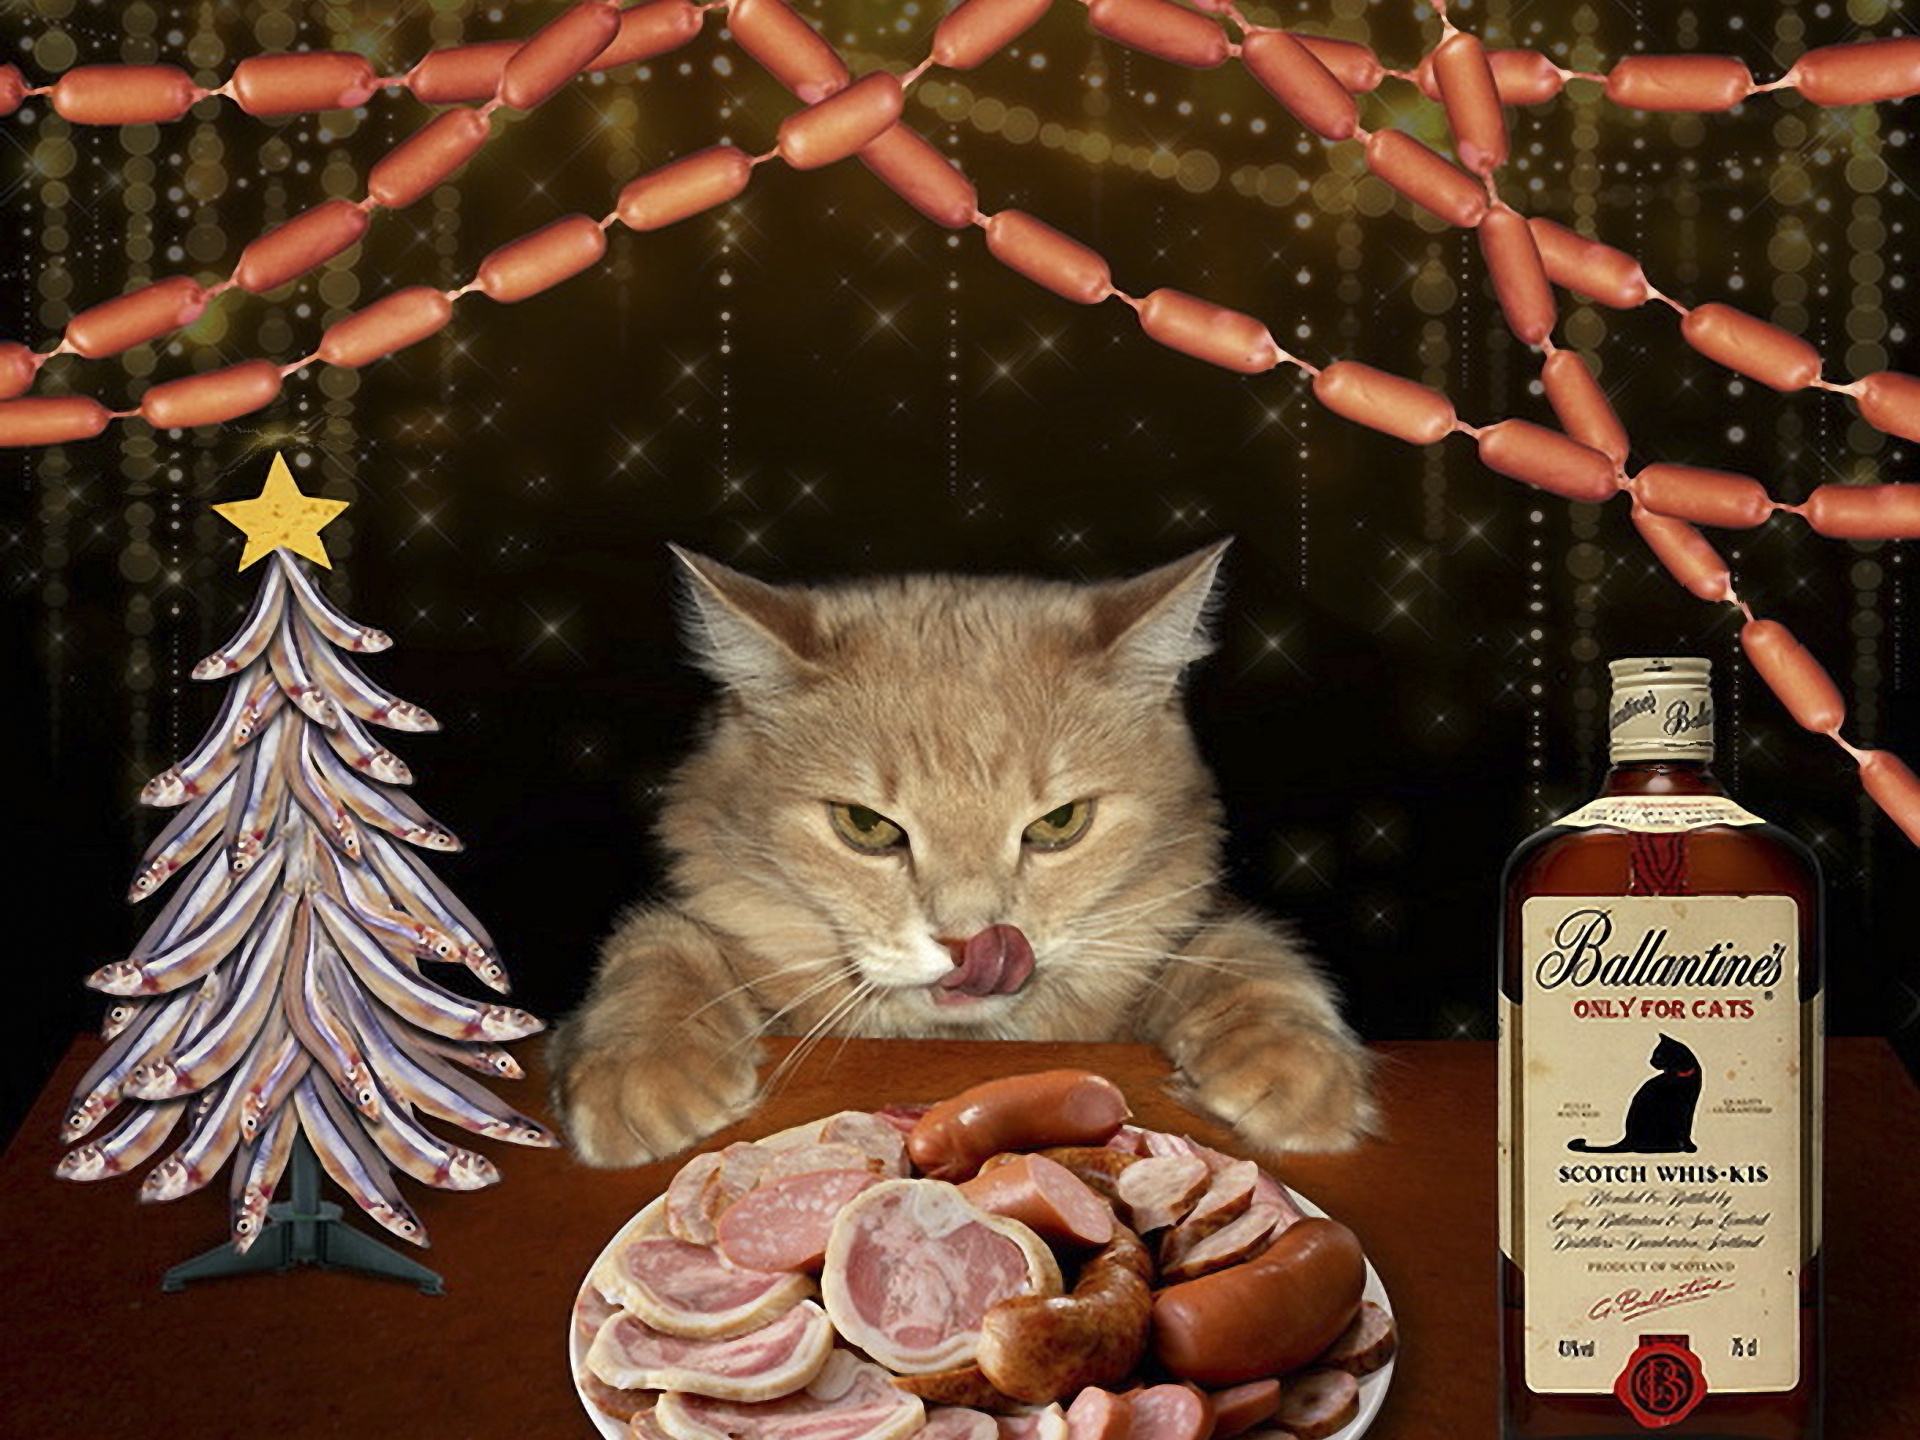 3d обои Кошачий новый год, тарелка с копченостями и сосисками, елка из рыбёшек, сосисочная гирлянда и кошачий скотч вис-кис (Bаllantines only for cats scotch whis-kis)  новый год # 65419